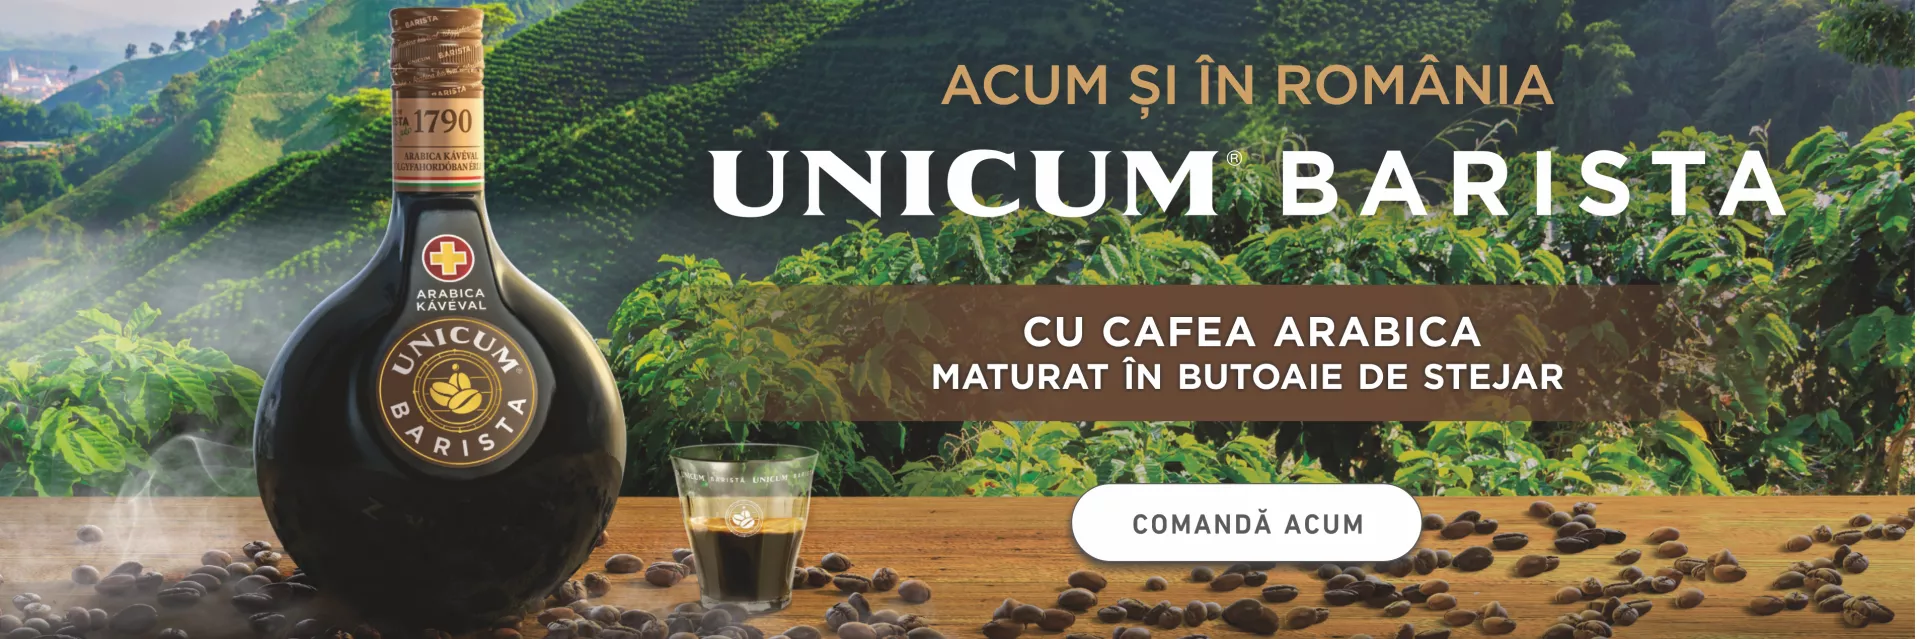 Unicum Barista